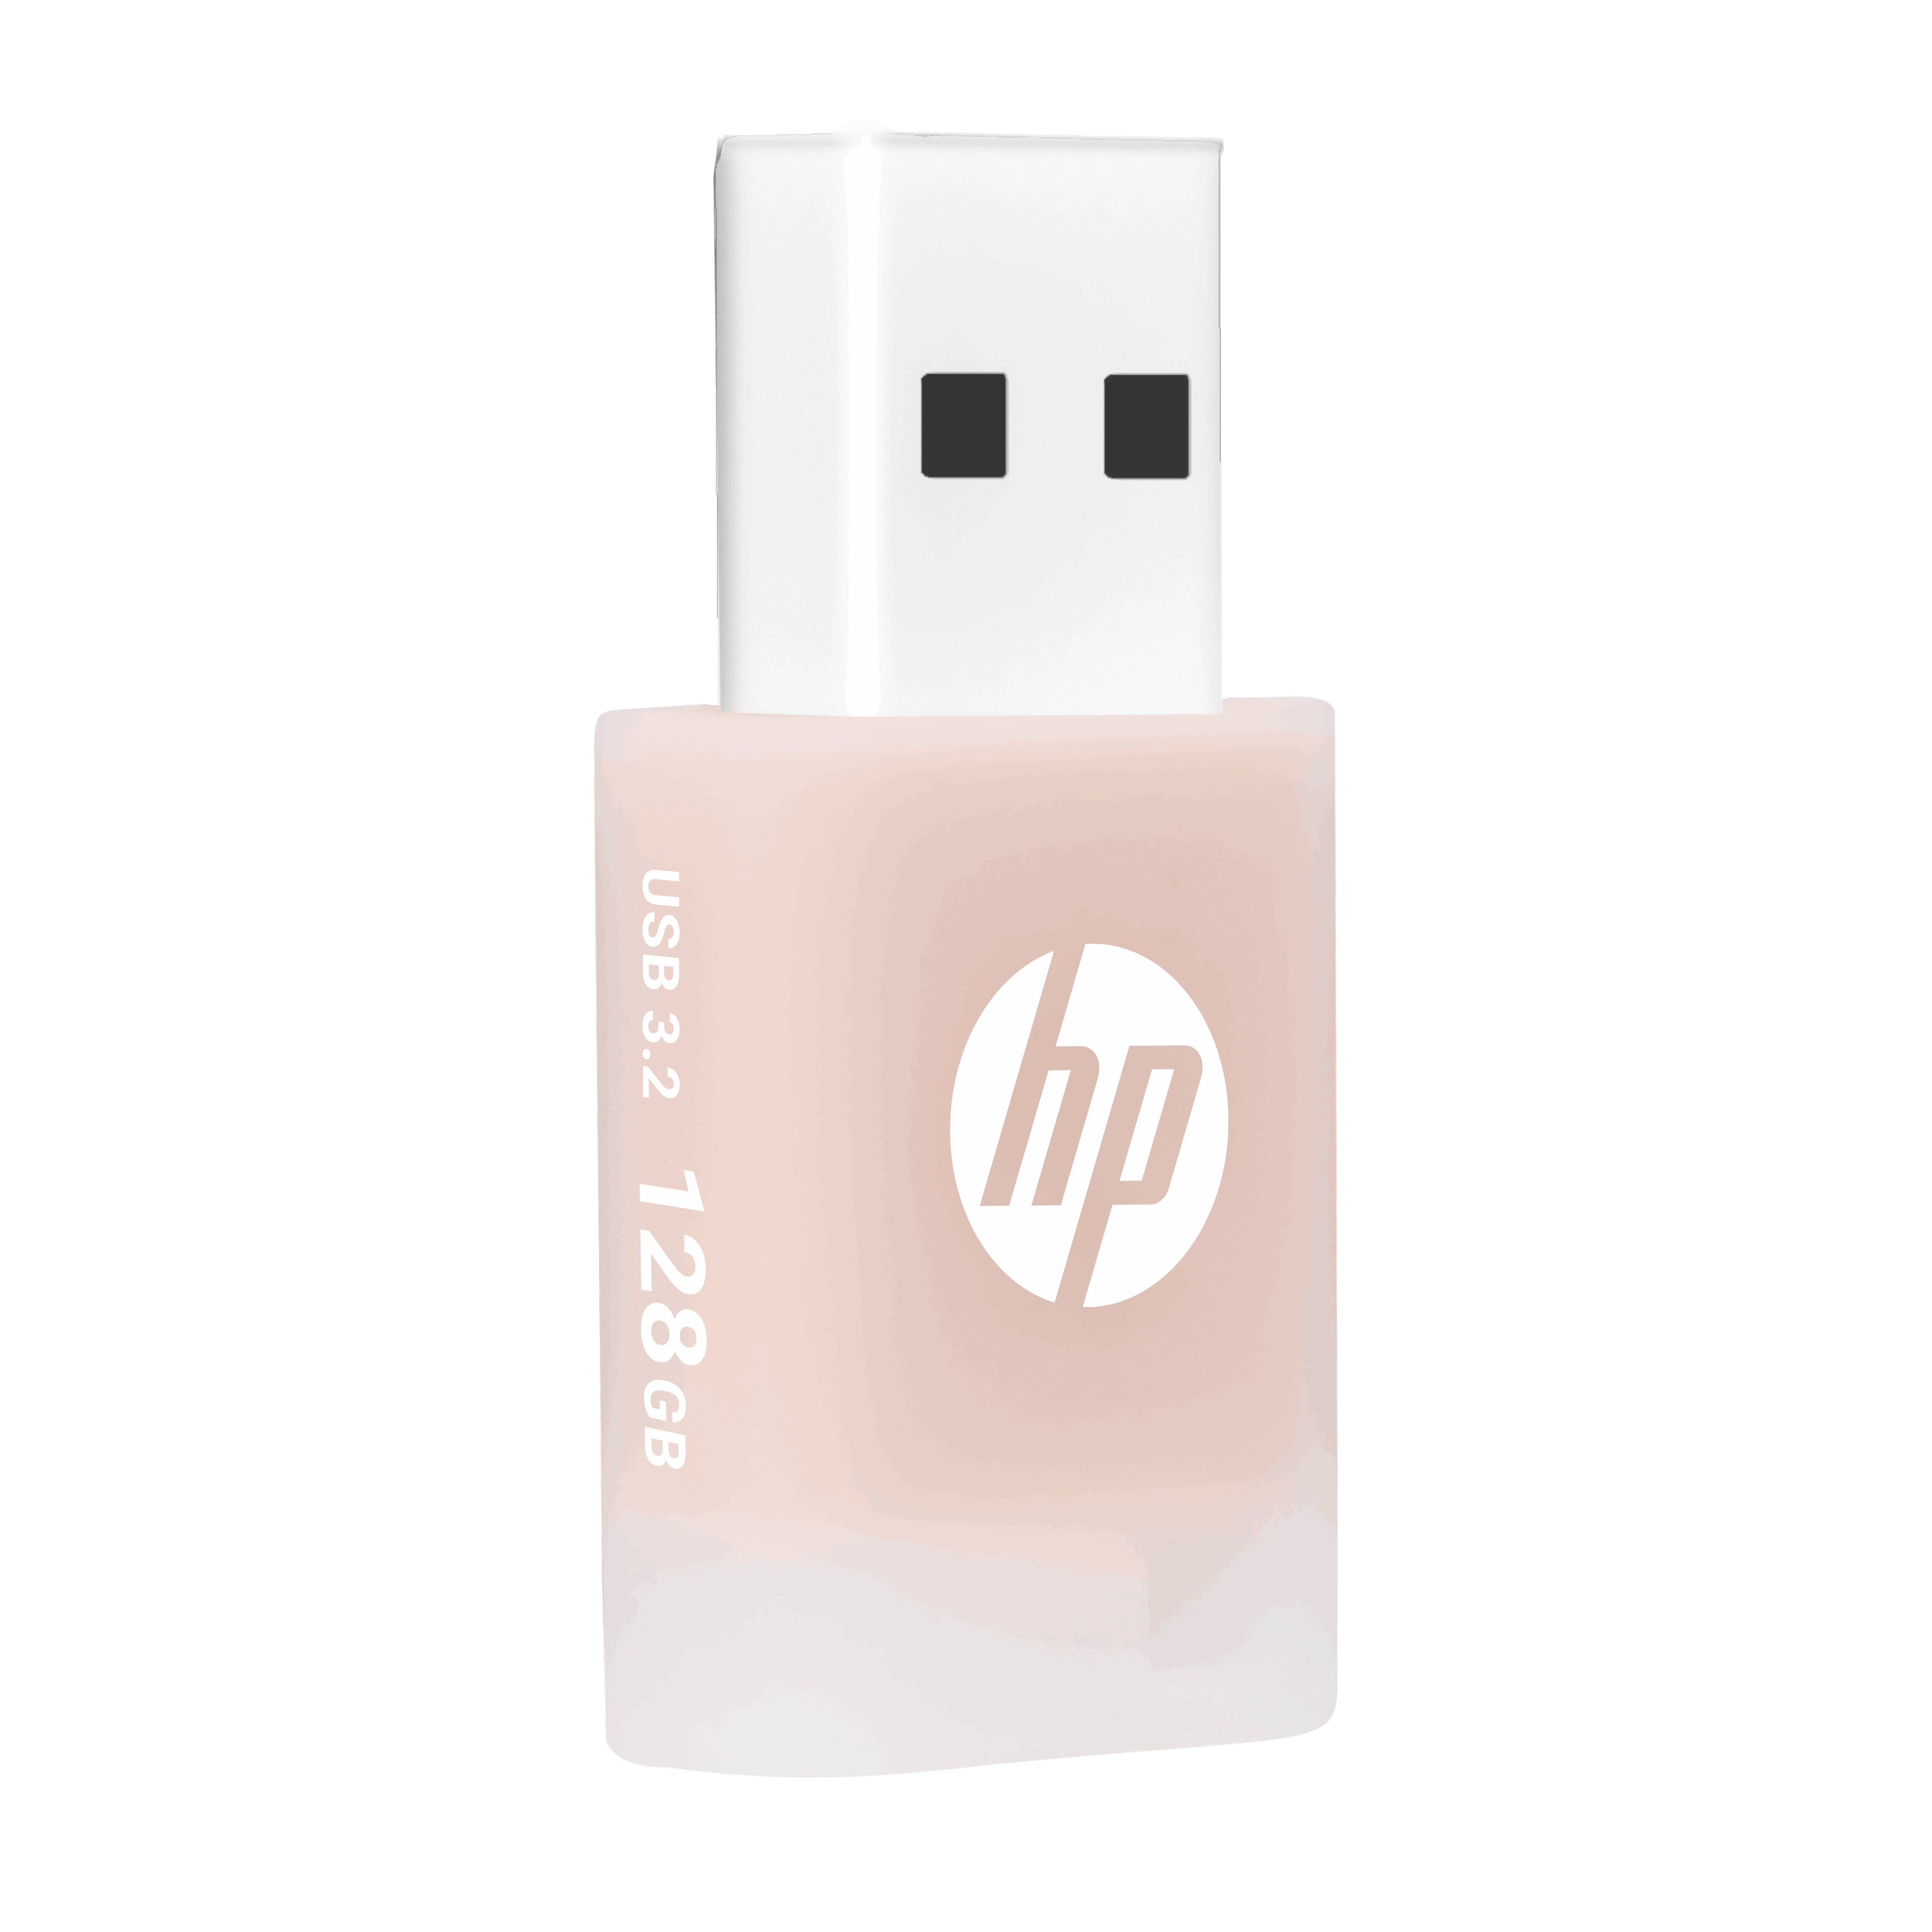 HPx768-beige-rose-128GB-09.png